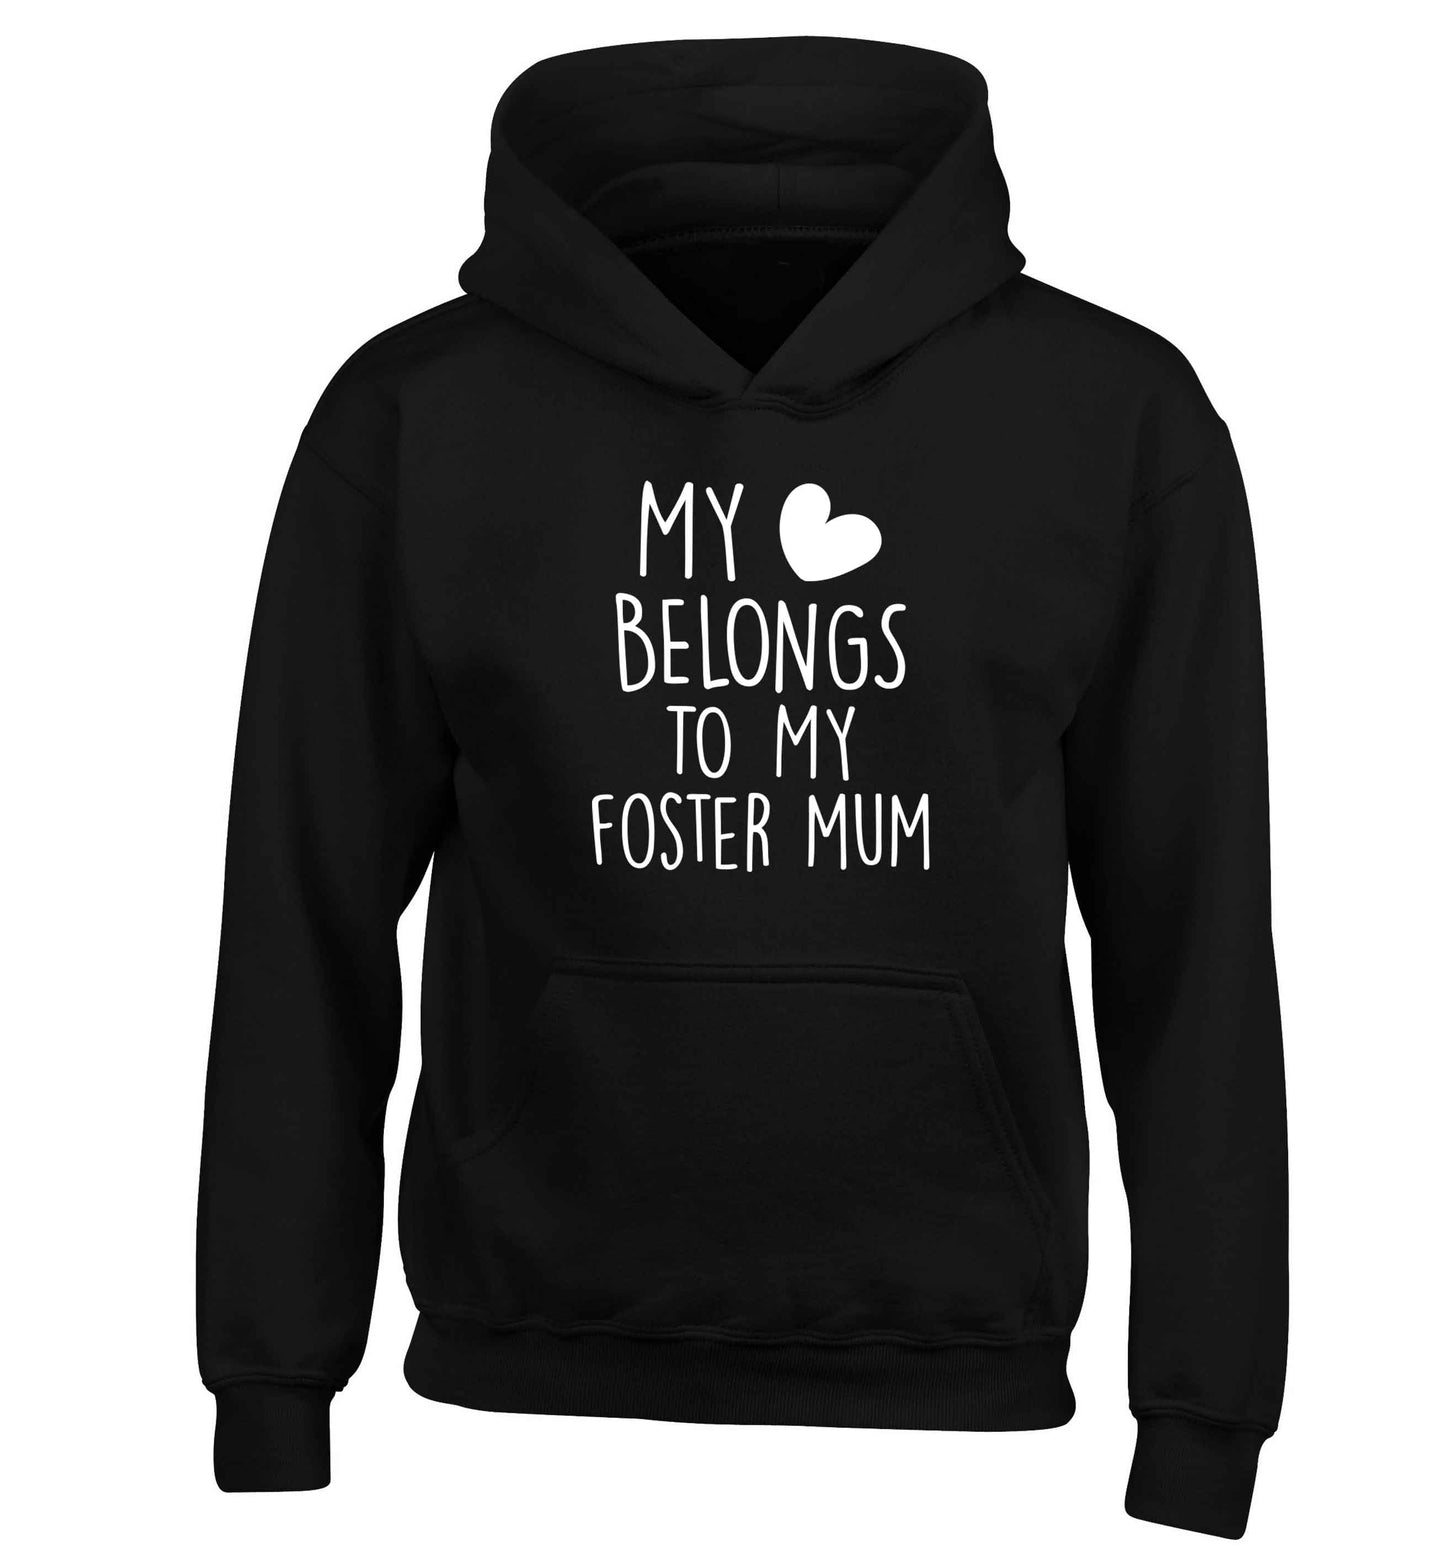 My heart belongs to my foster mum children's black hoodie 12-13 Years